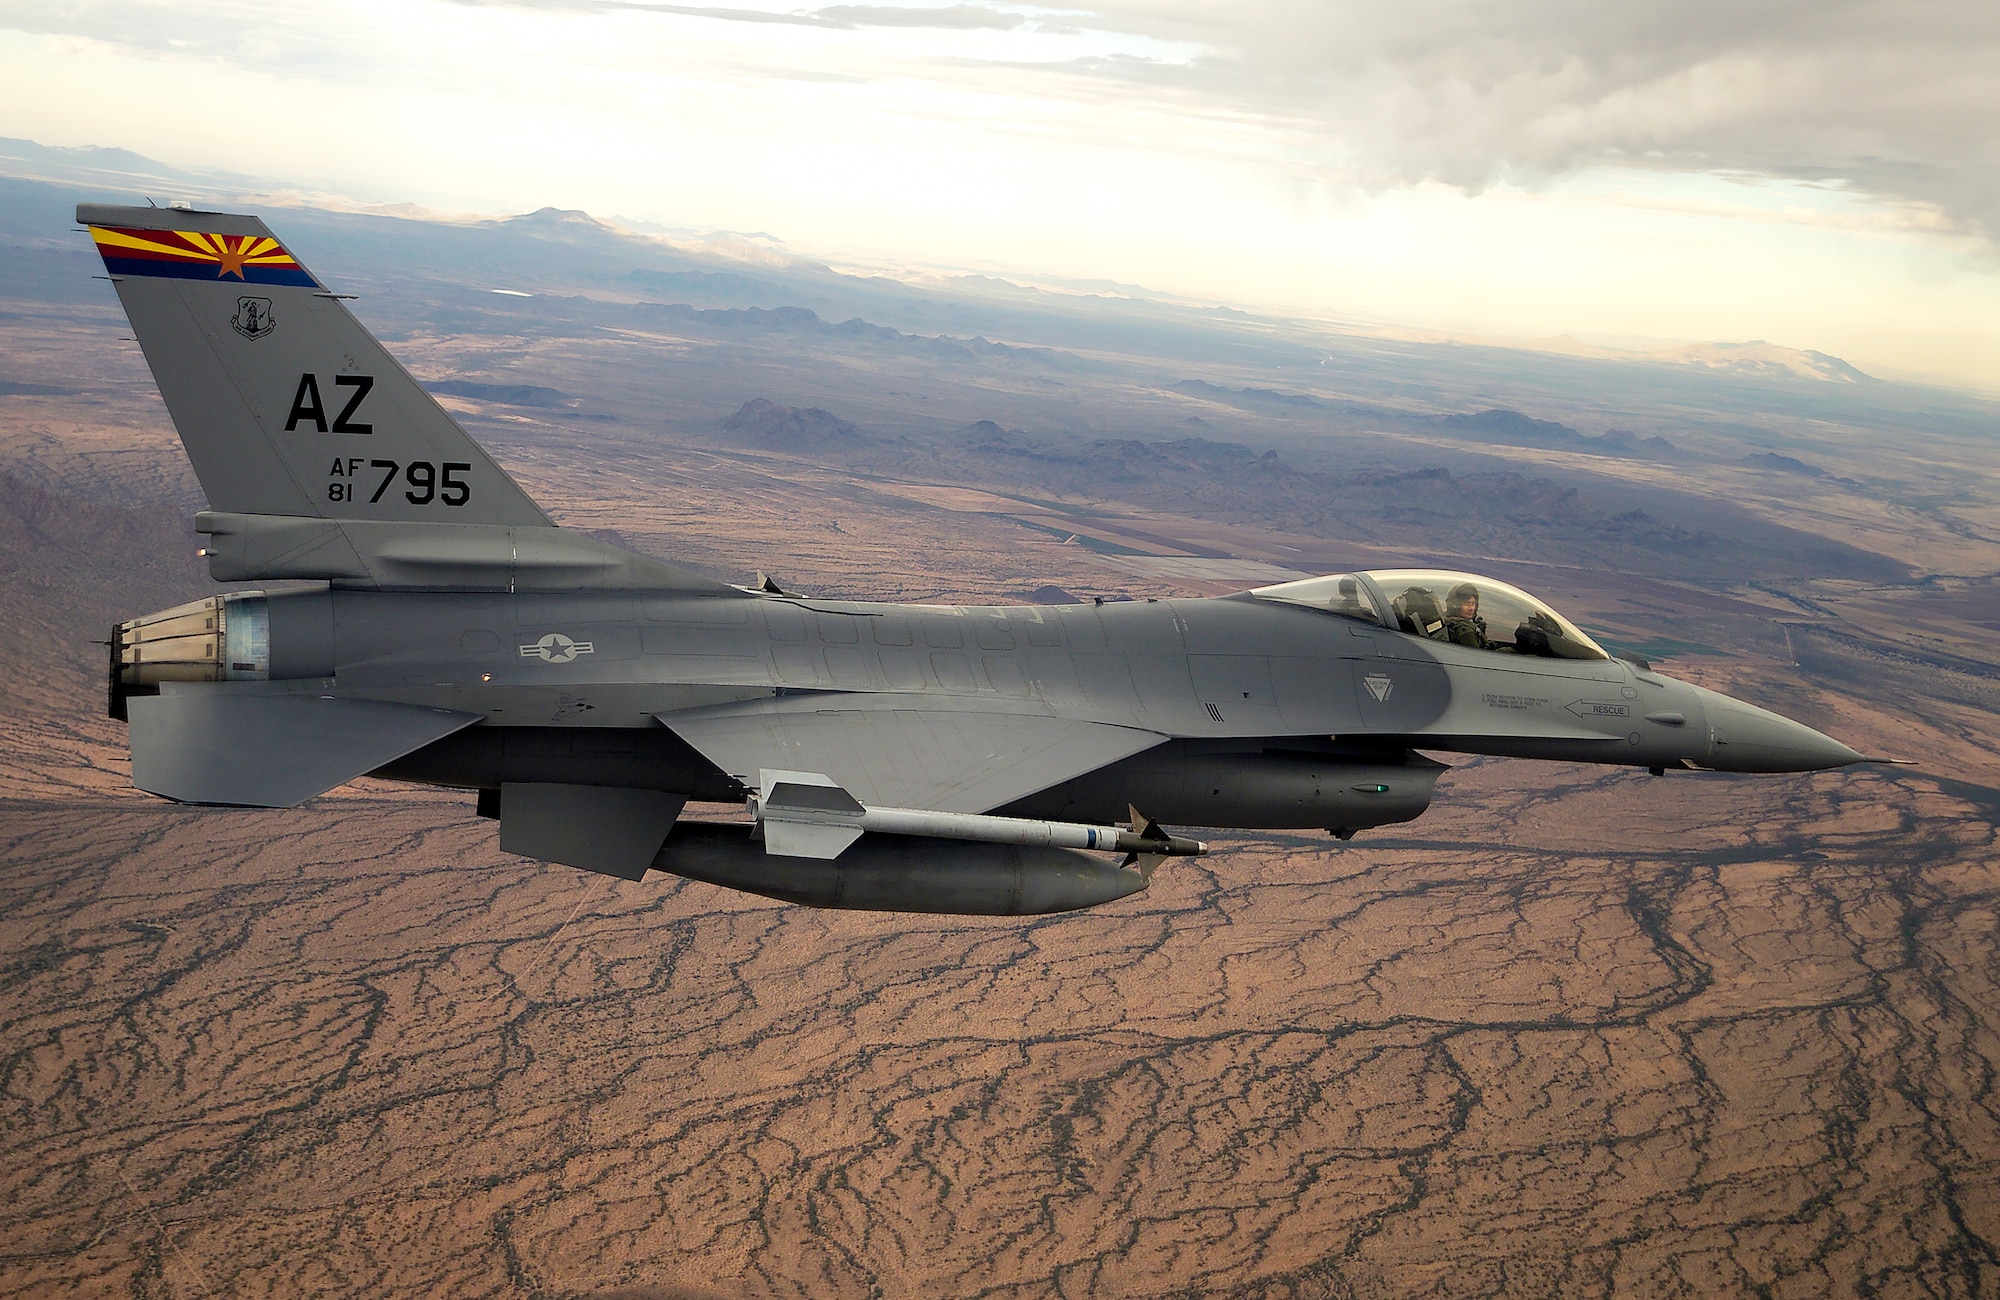 Die erste Gruppe ukrainischer Piloten absolvierte in den USA ein Trainingsprogramm für den Einsatz von F-16 Fighting Falcon Kampfflugzeugen